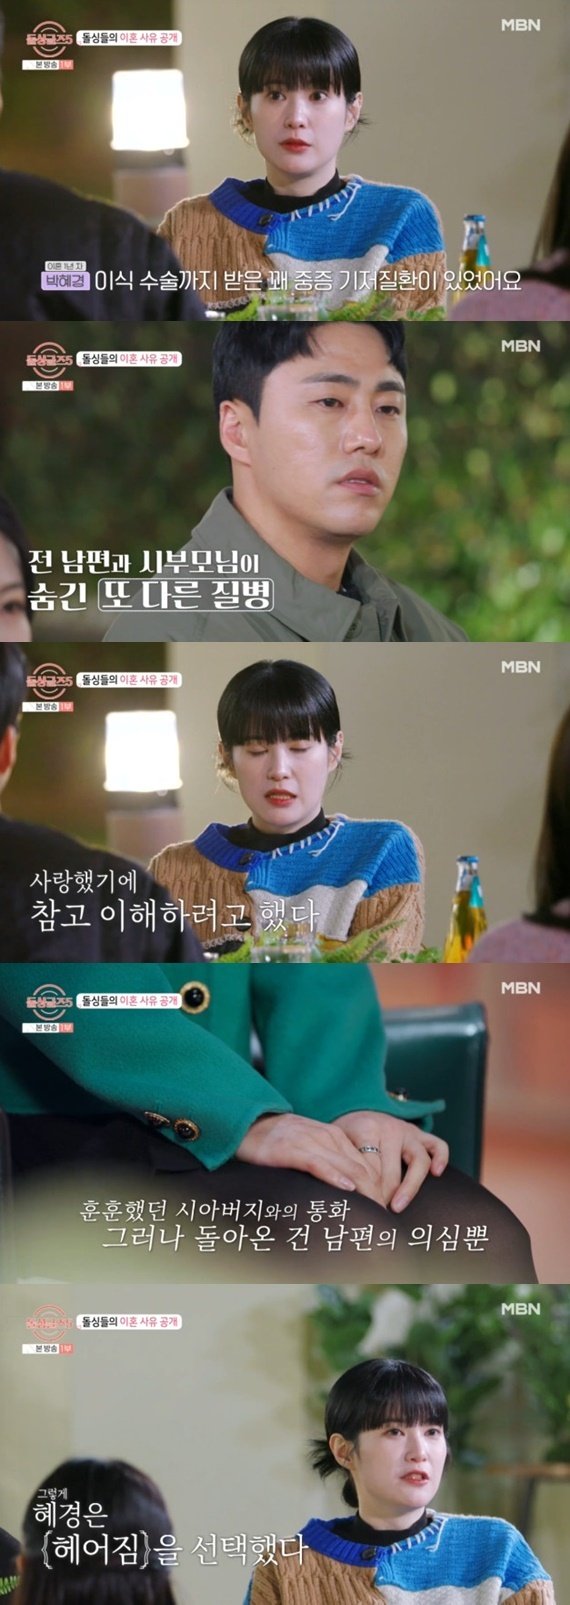 '돌싱글즈5' 박혜경 전남편, 중증 기저질환 감수…다른 질병 숨겨